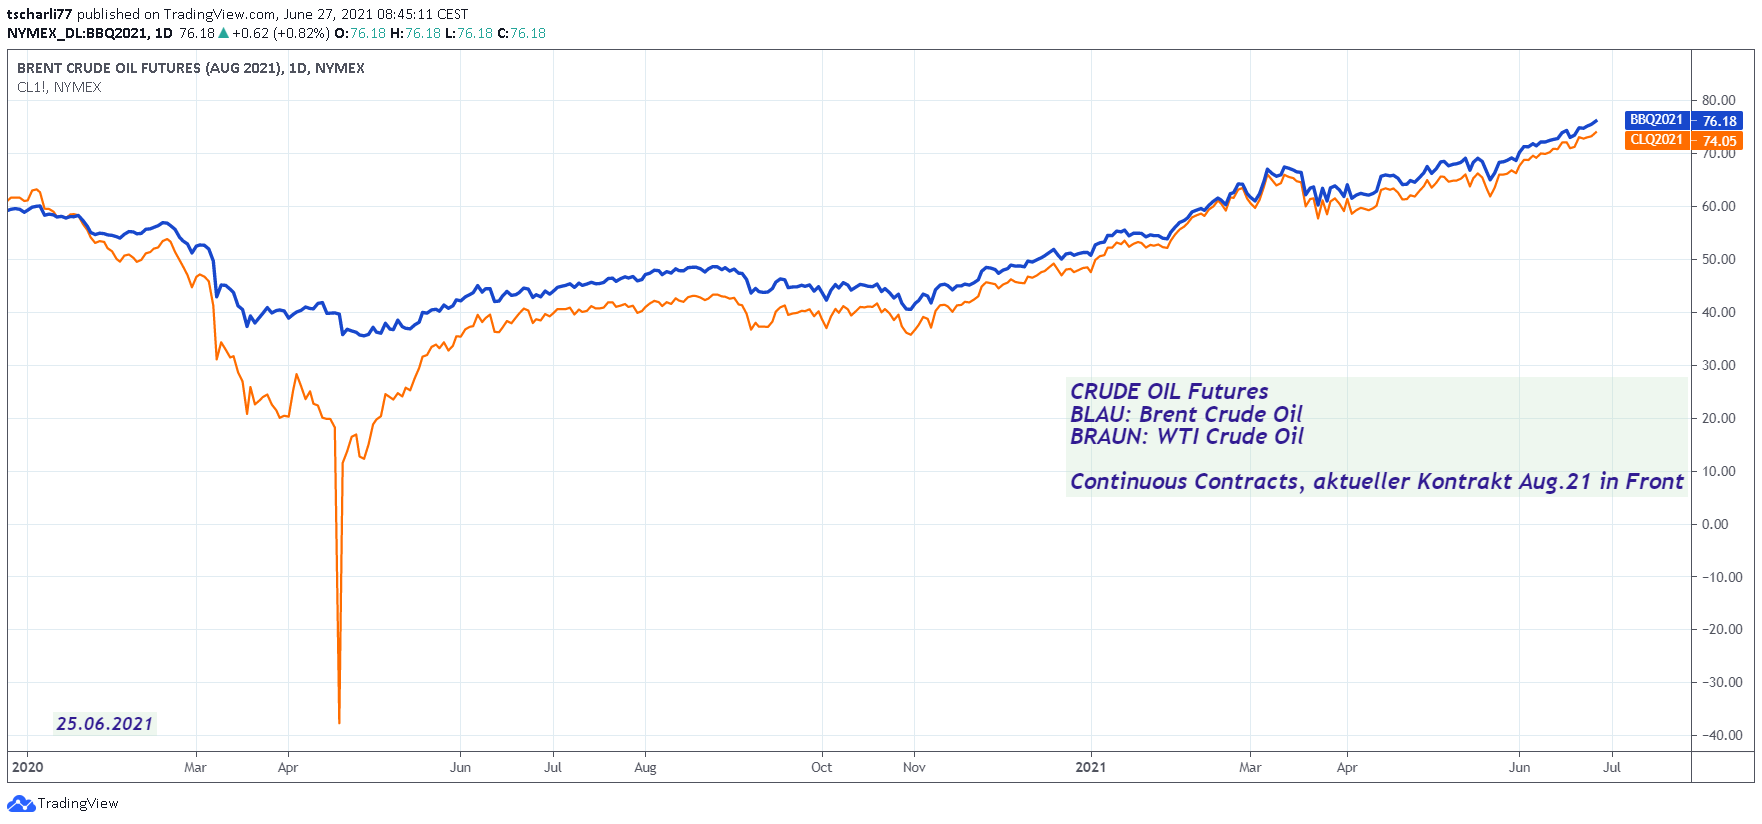 Brent und WTI Crude Oil – Futurespreis 2020/21  —  tradingview.com